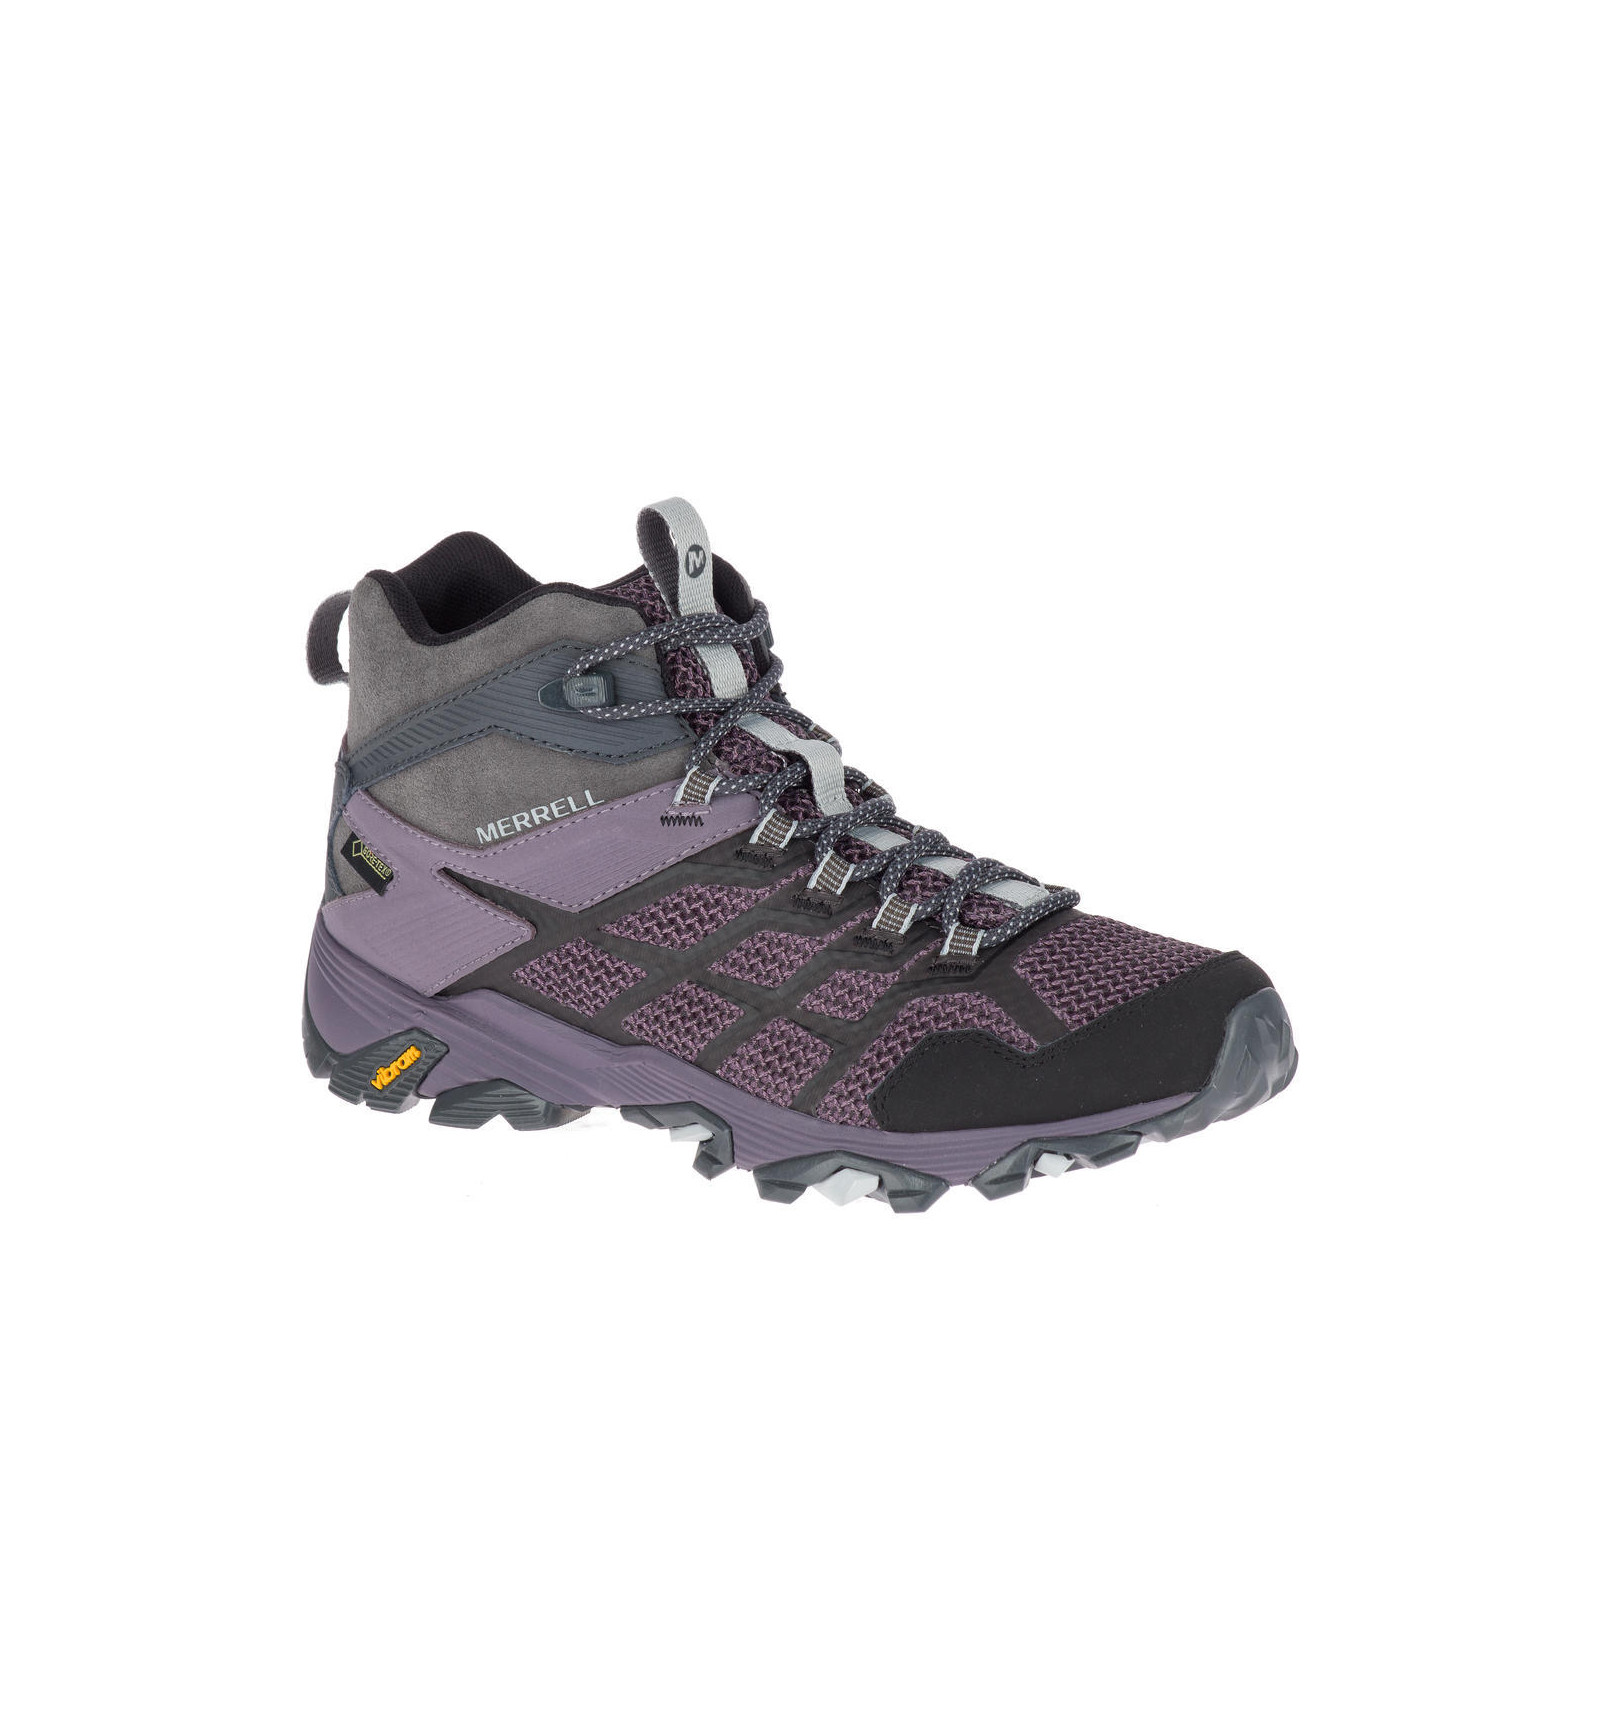 Merrell Moab Fst 2 Mid Gore Tex Granite Shark Women S Hiking Boots Alpinstore